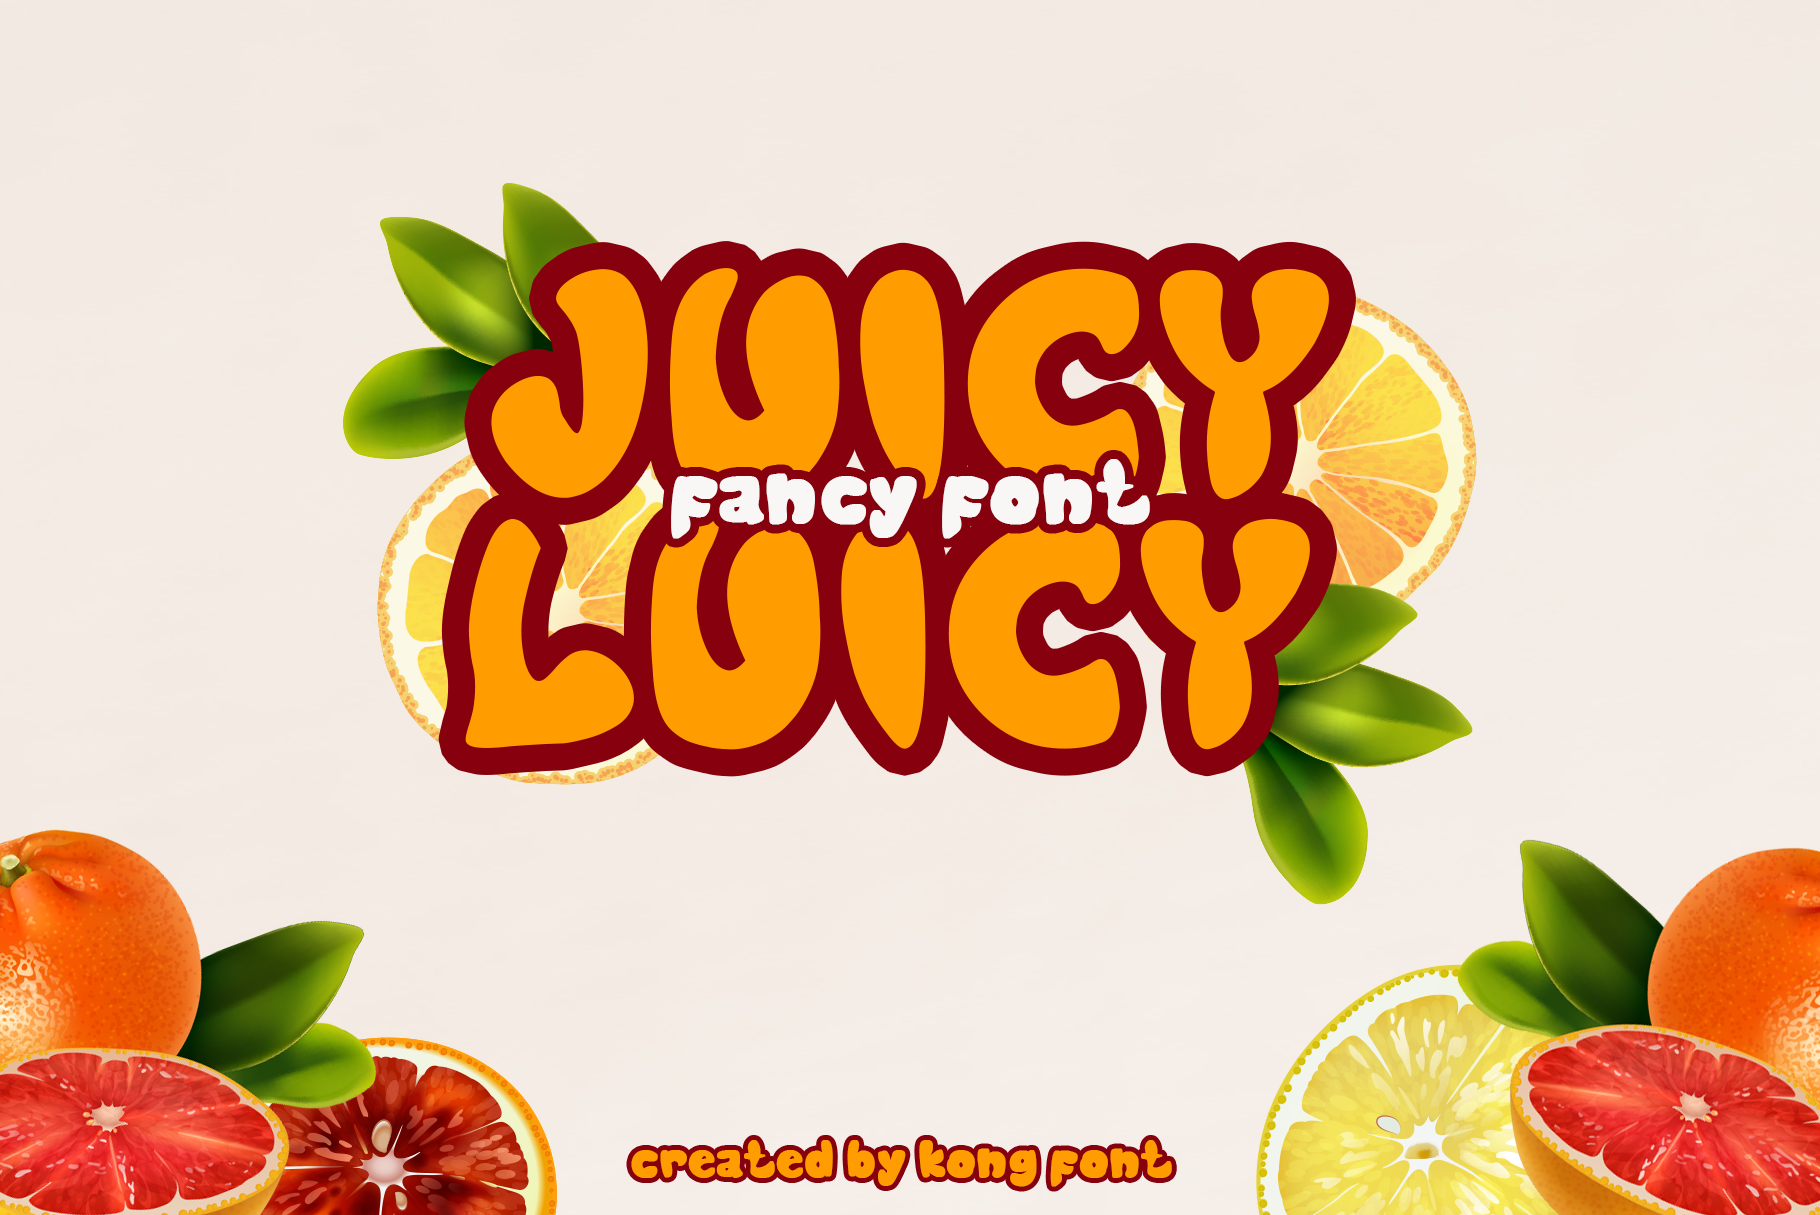 Juicy Luicy Hollow